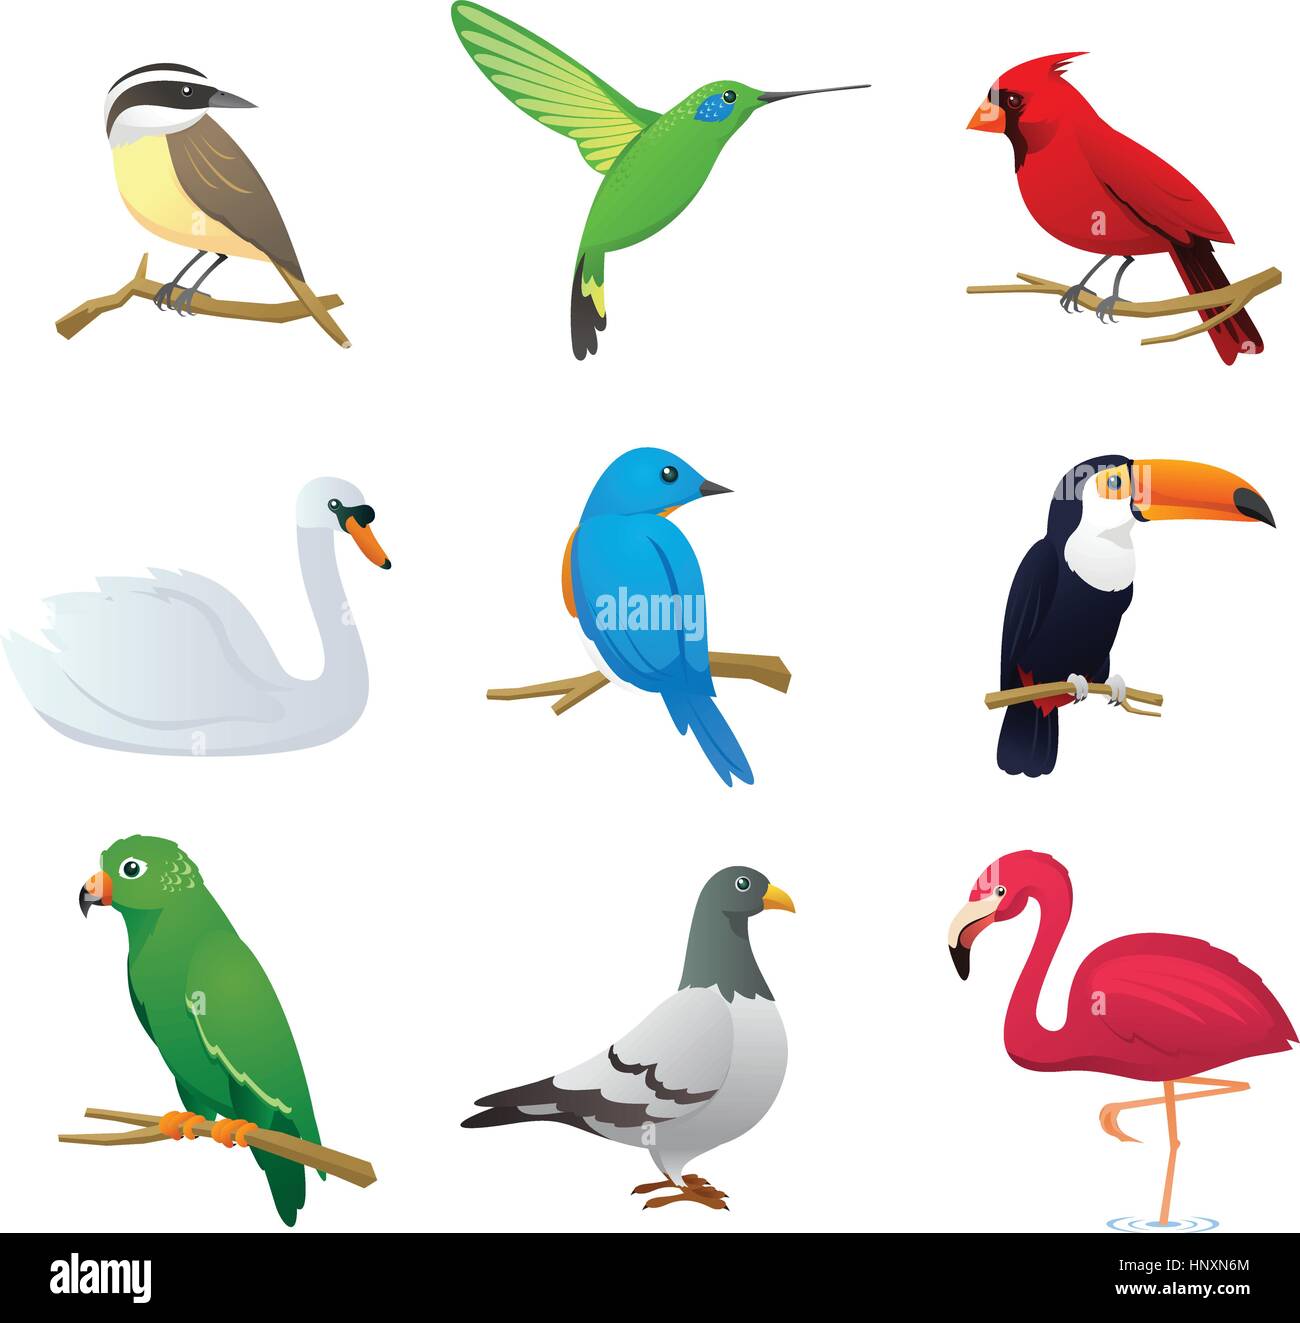 Realistiche specie di uccelli raccolta, con nove diverse specie di uccelli illustrazione vettoriale. Illustrazione Vettoriale